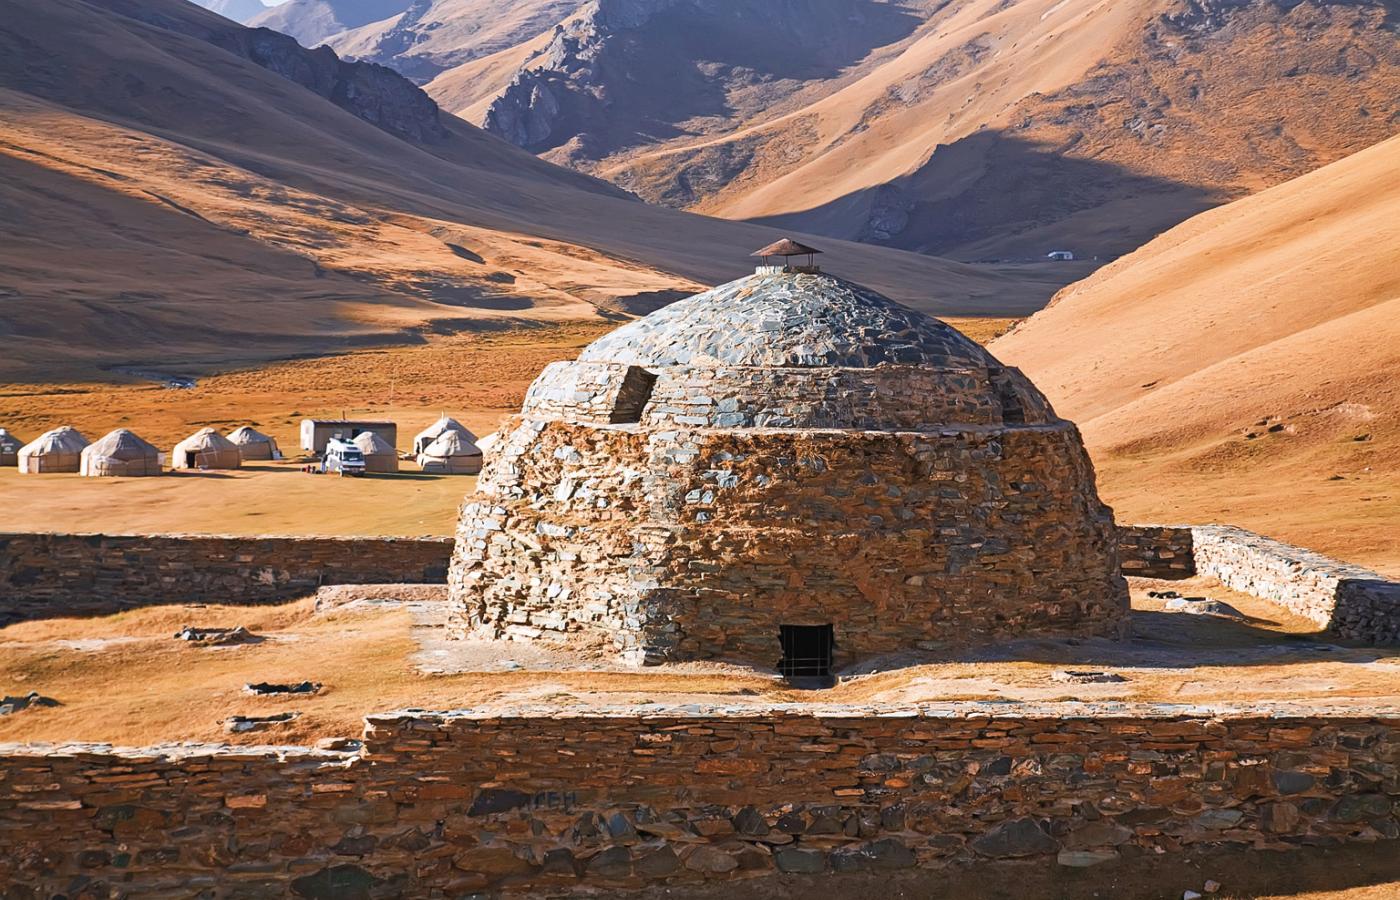 Późny symbol cywilizacji rozdroży, regionu wędrownych mędrców – położony 3200 m n.p.m. karawanseraj Tash Rabat w dzisiejszym Kirgistanie.